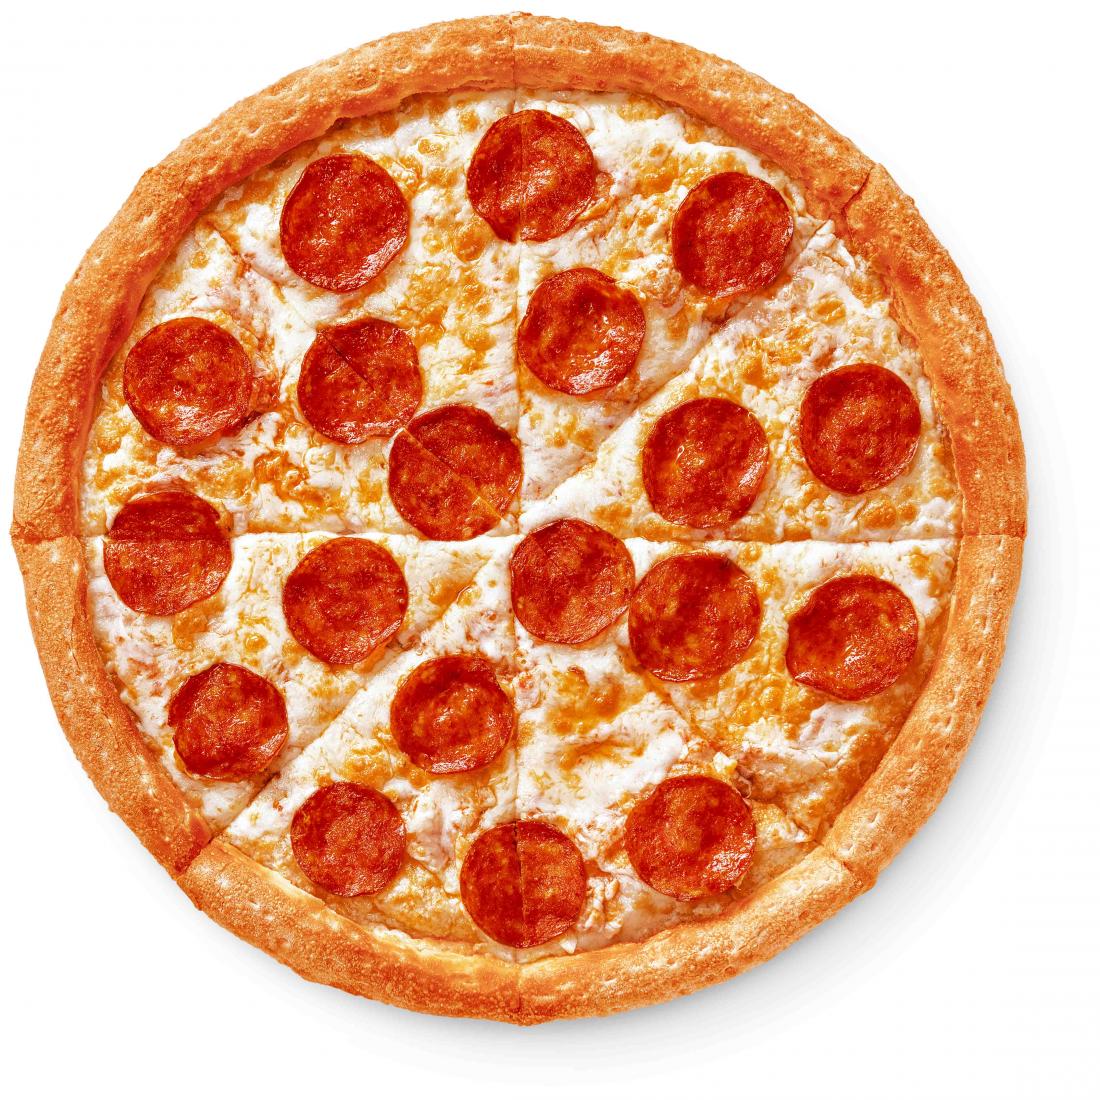 сколько калорий в куске пиццы пепперони из додо фото 69